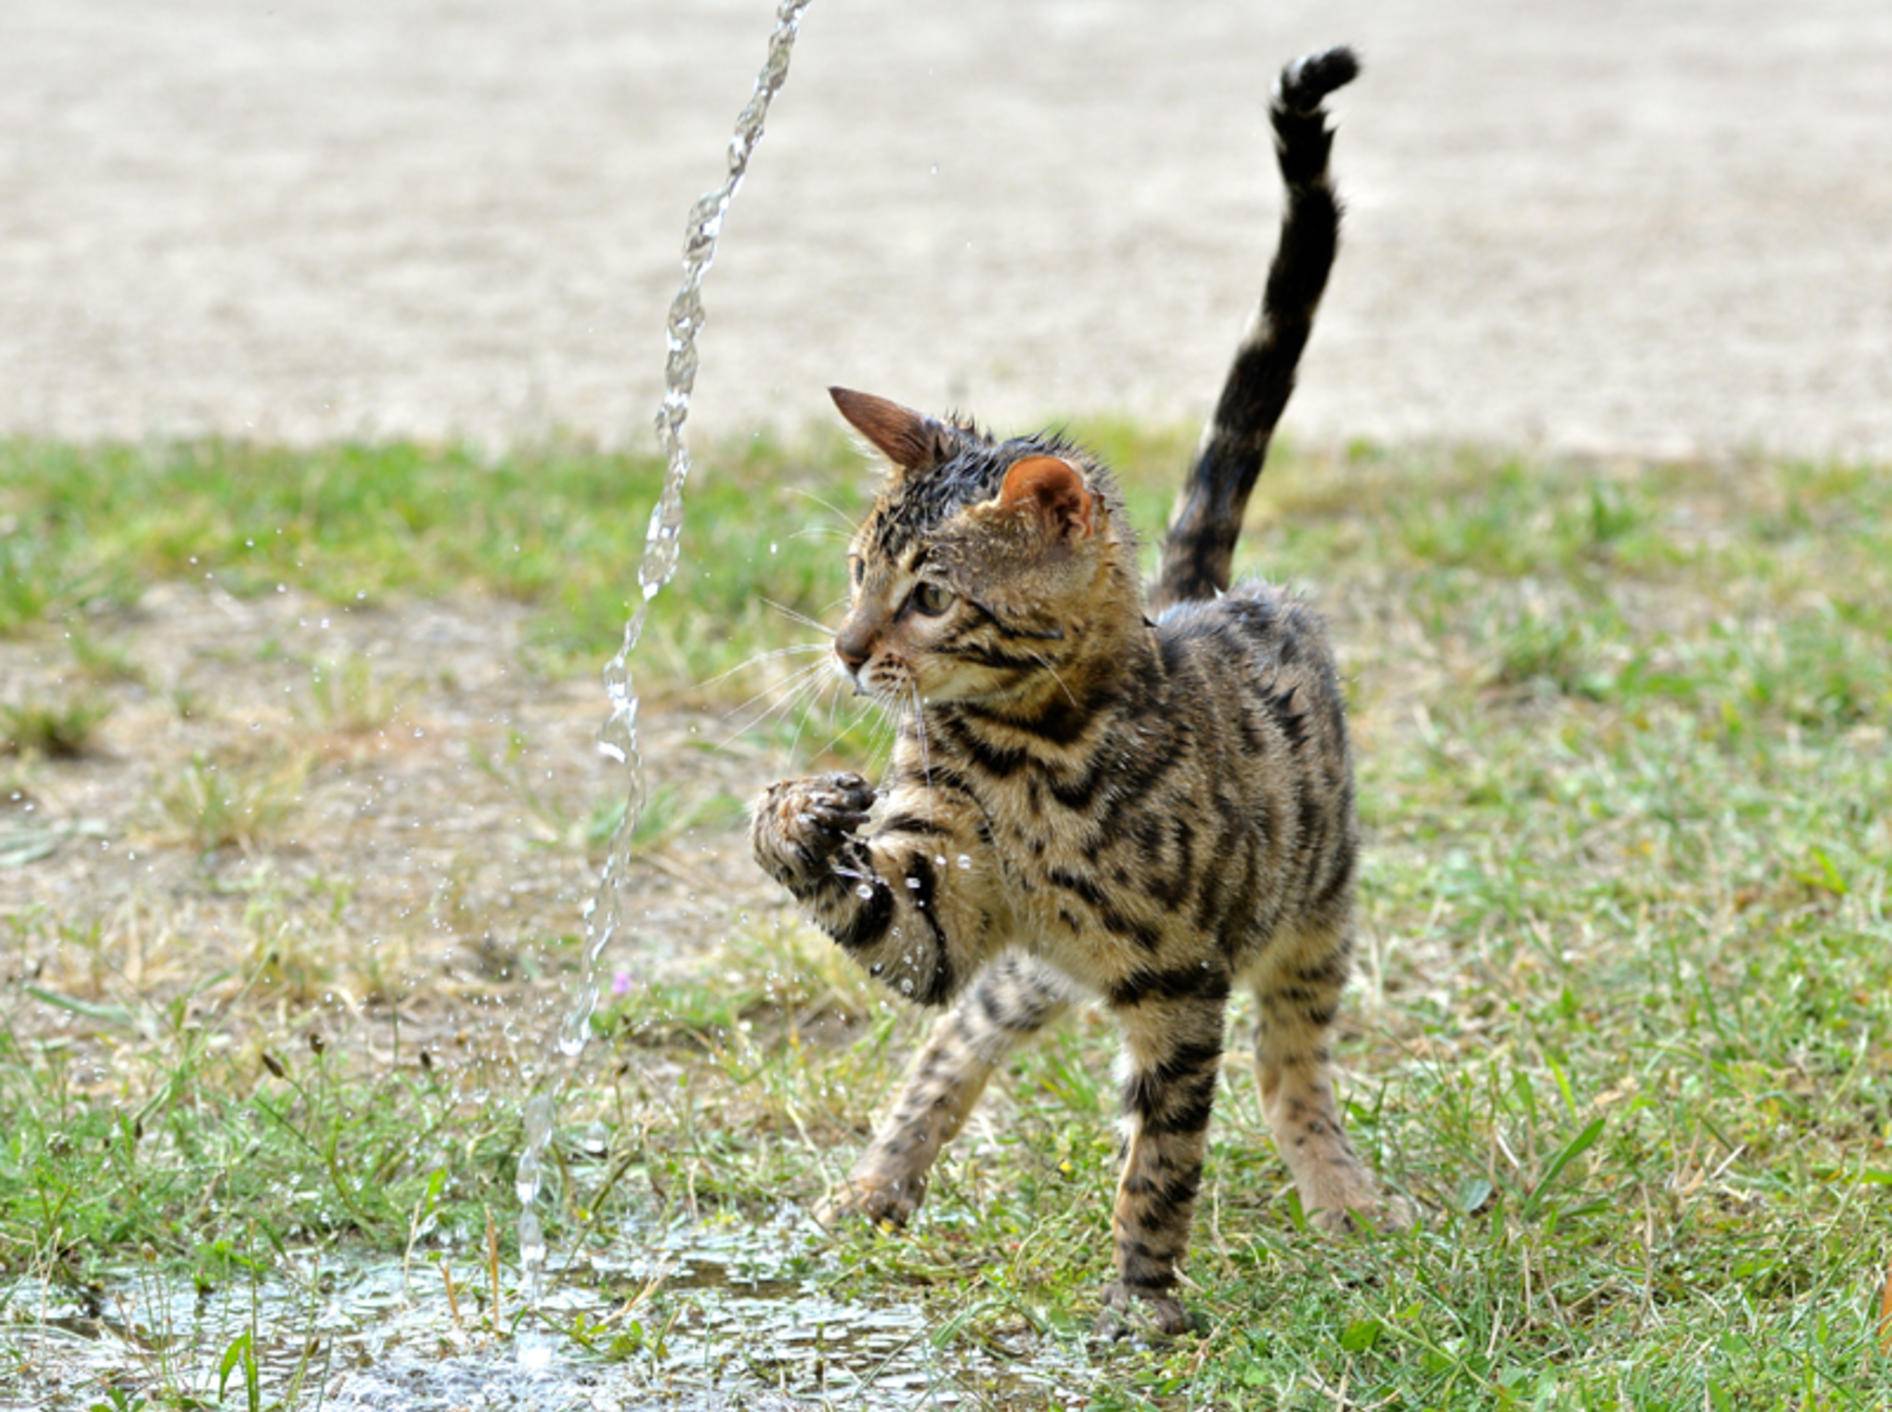 "Plitsch! Platsch! Das macht Spaß", findet diese süße Bengal-Katze, die mit dem Wasserstrahl spielt – Shutterstock / Calinat